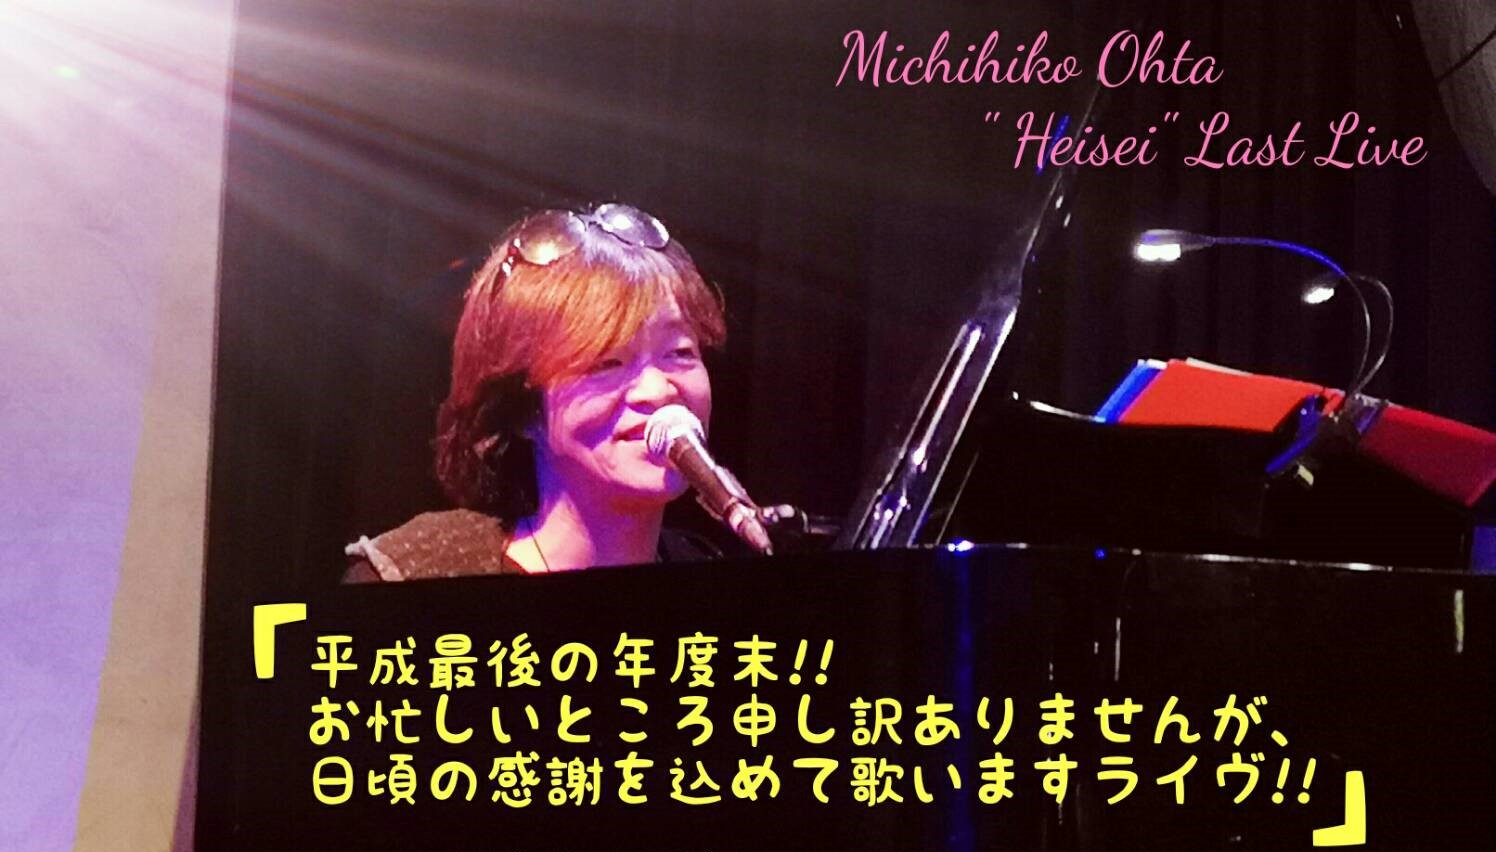 Michihiko Ohta "Heisei" Last Live 「平成最後の年度末!! お忙しいところ申し訳ありませんが、日頃の感謝を込めて歌いますライヴ!!」